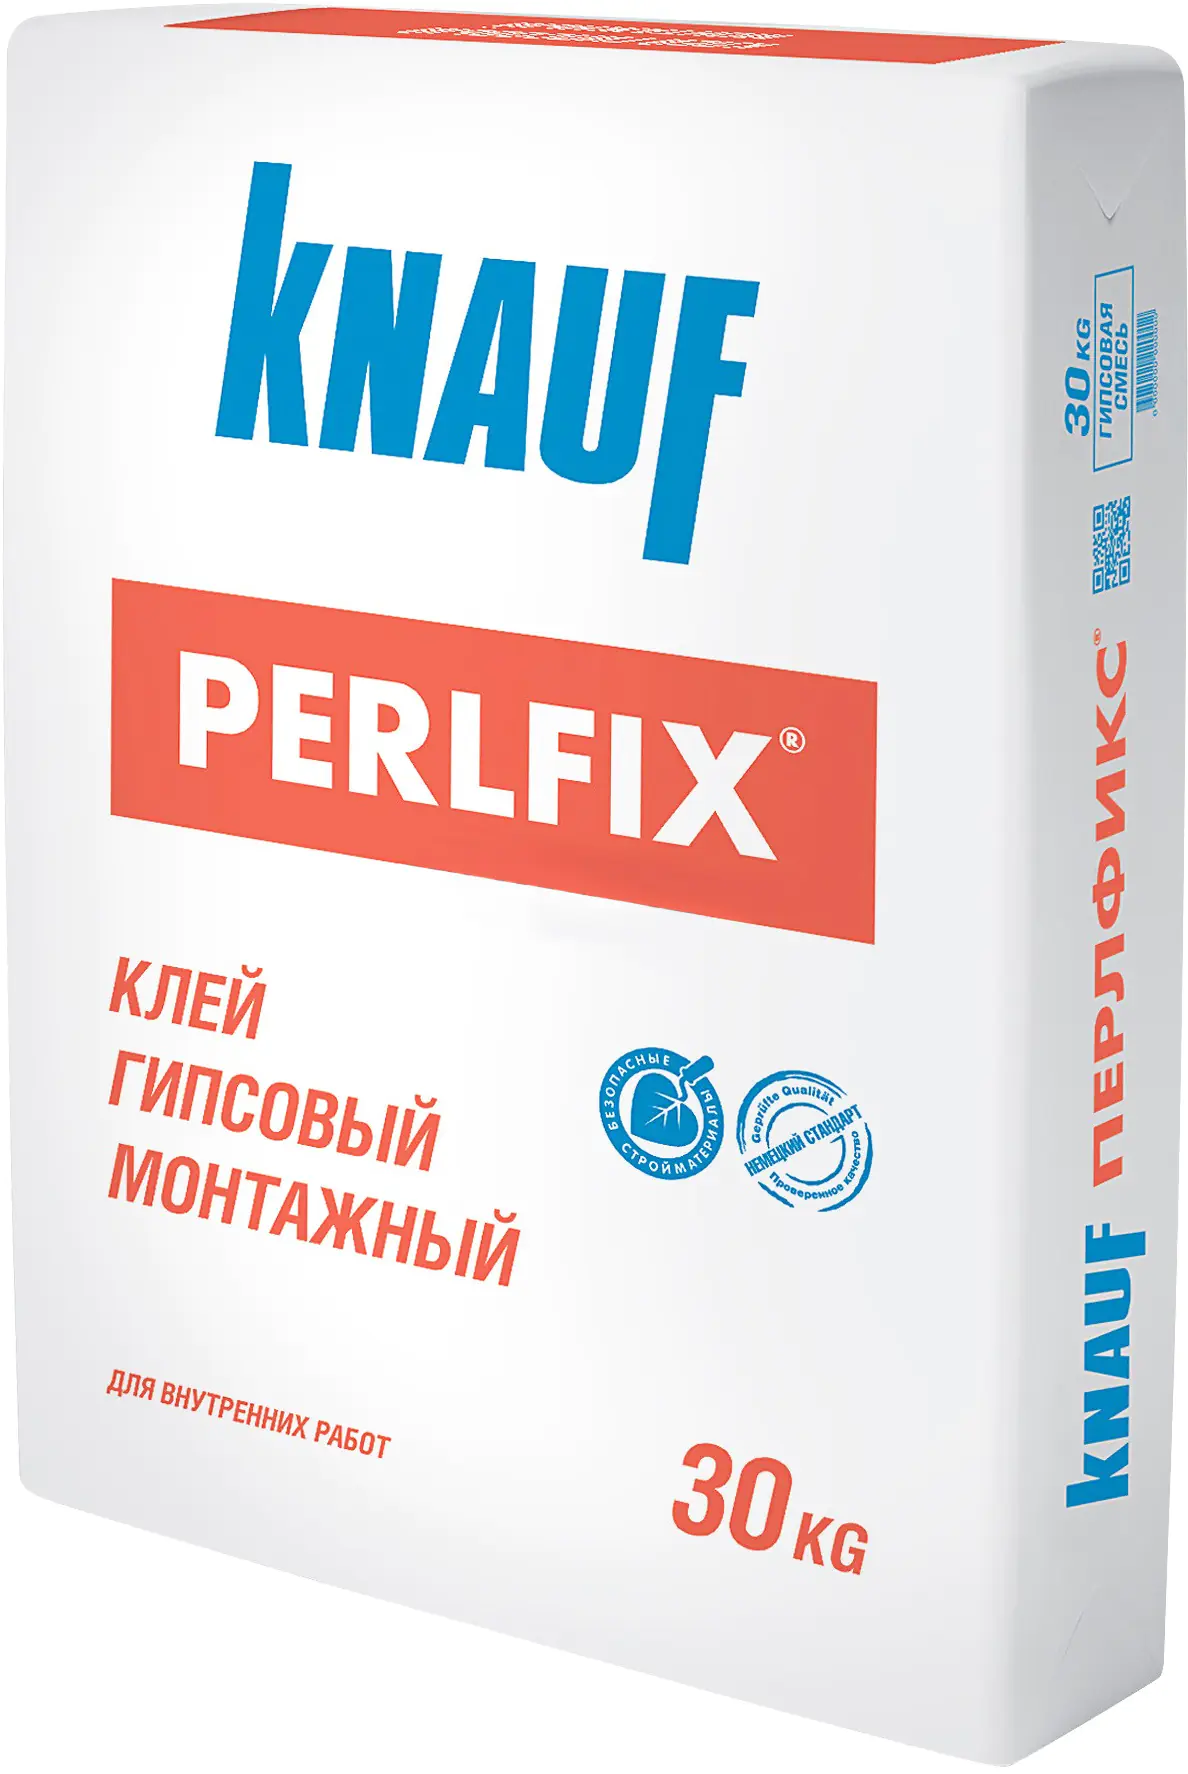 Клей для гипсокартона Perlfix KNAUF. 30 кг. РБ.